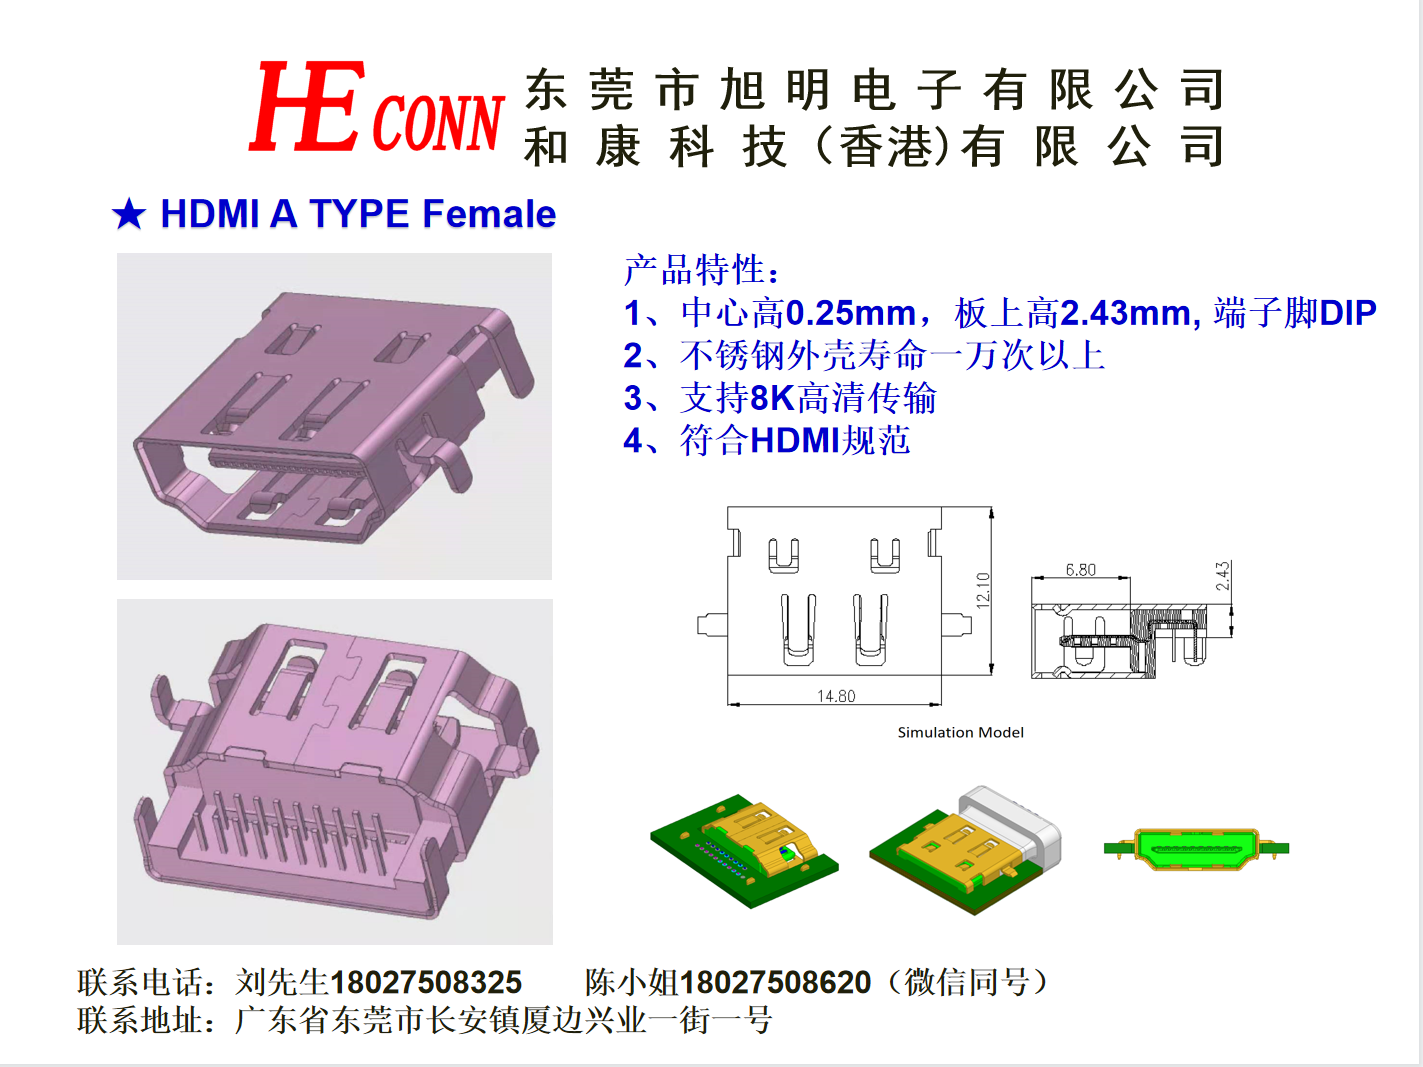 HDMI A TYPE Female